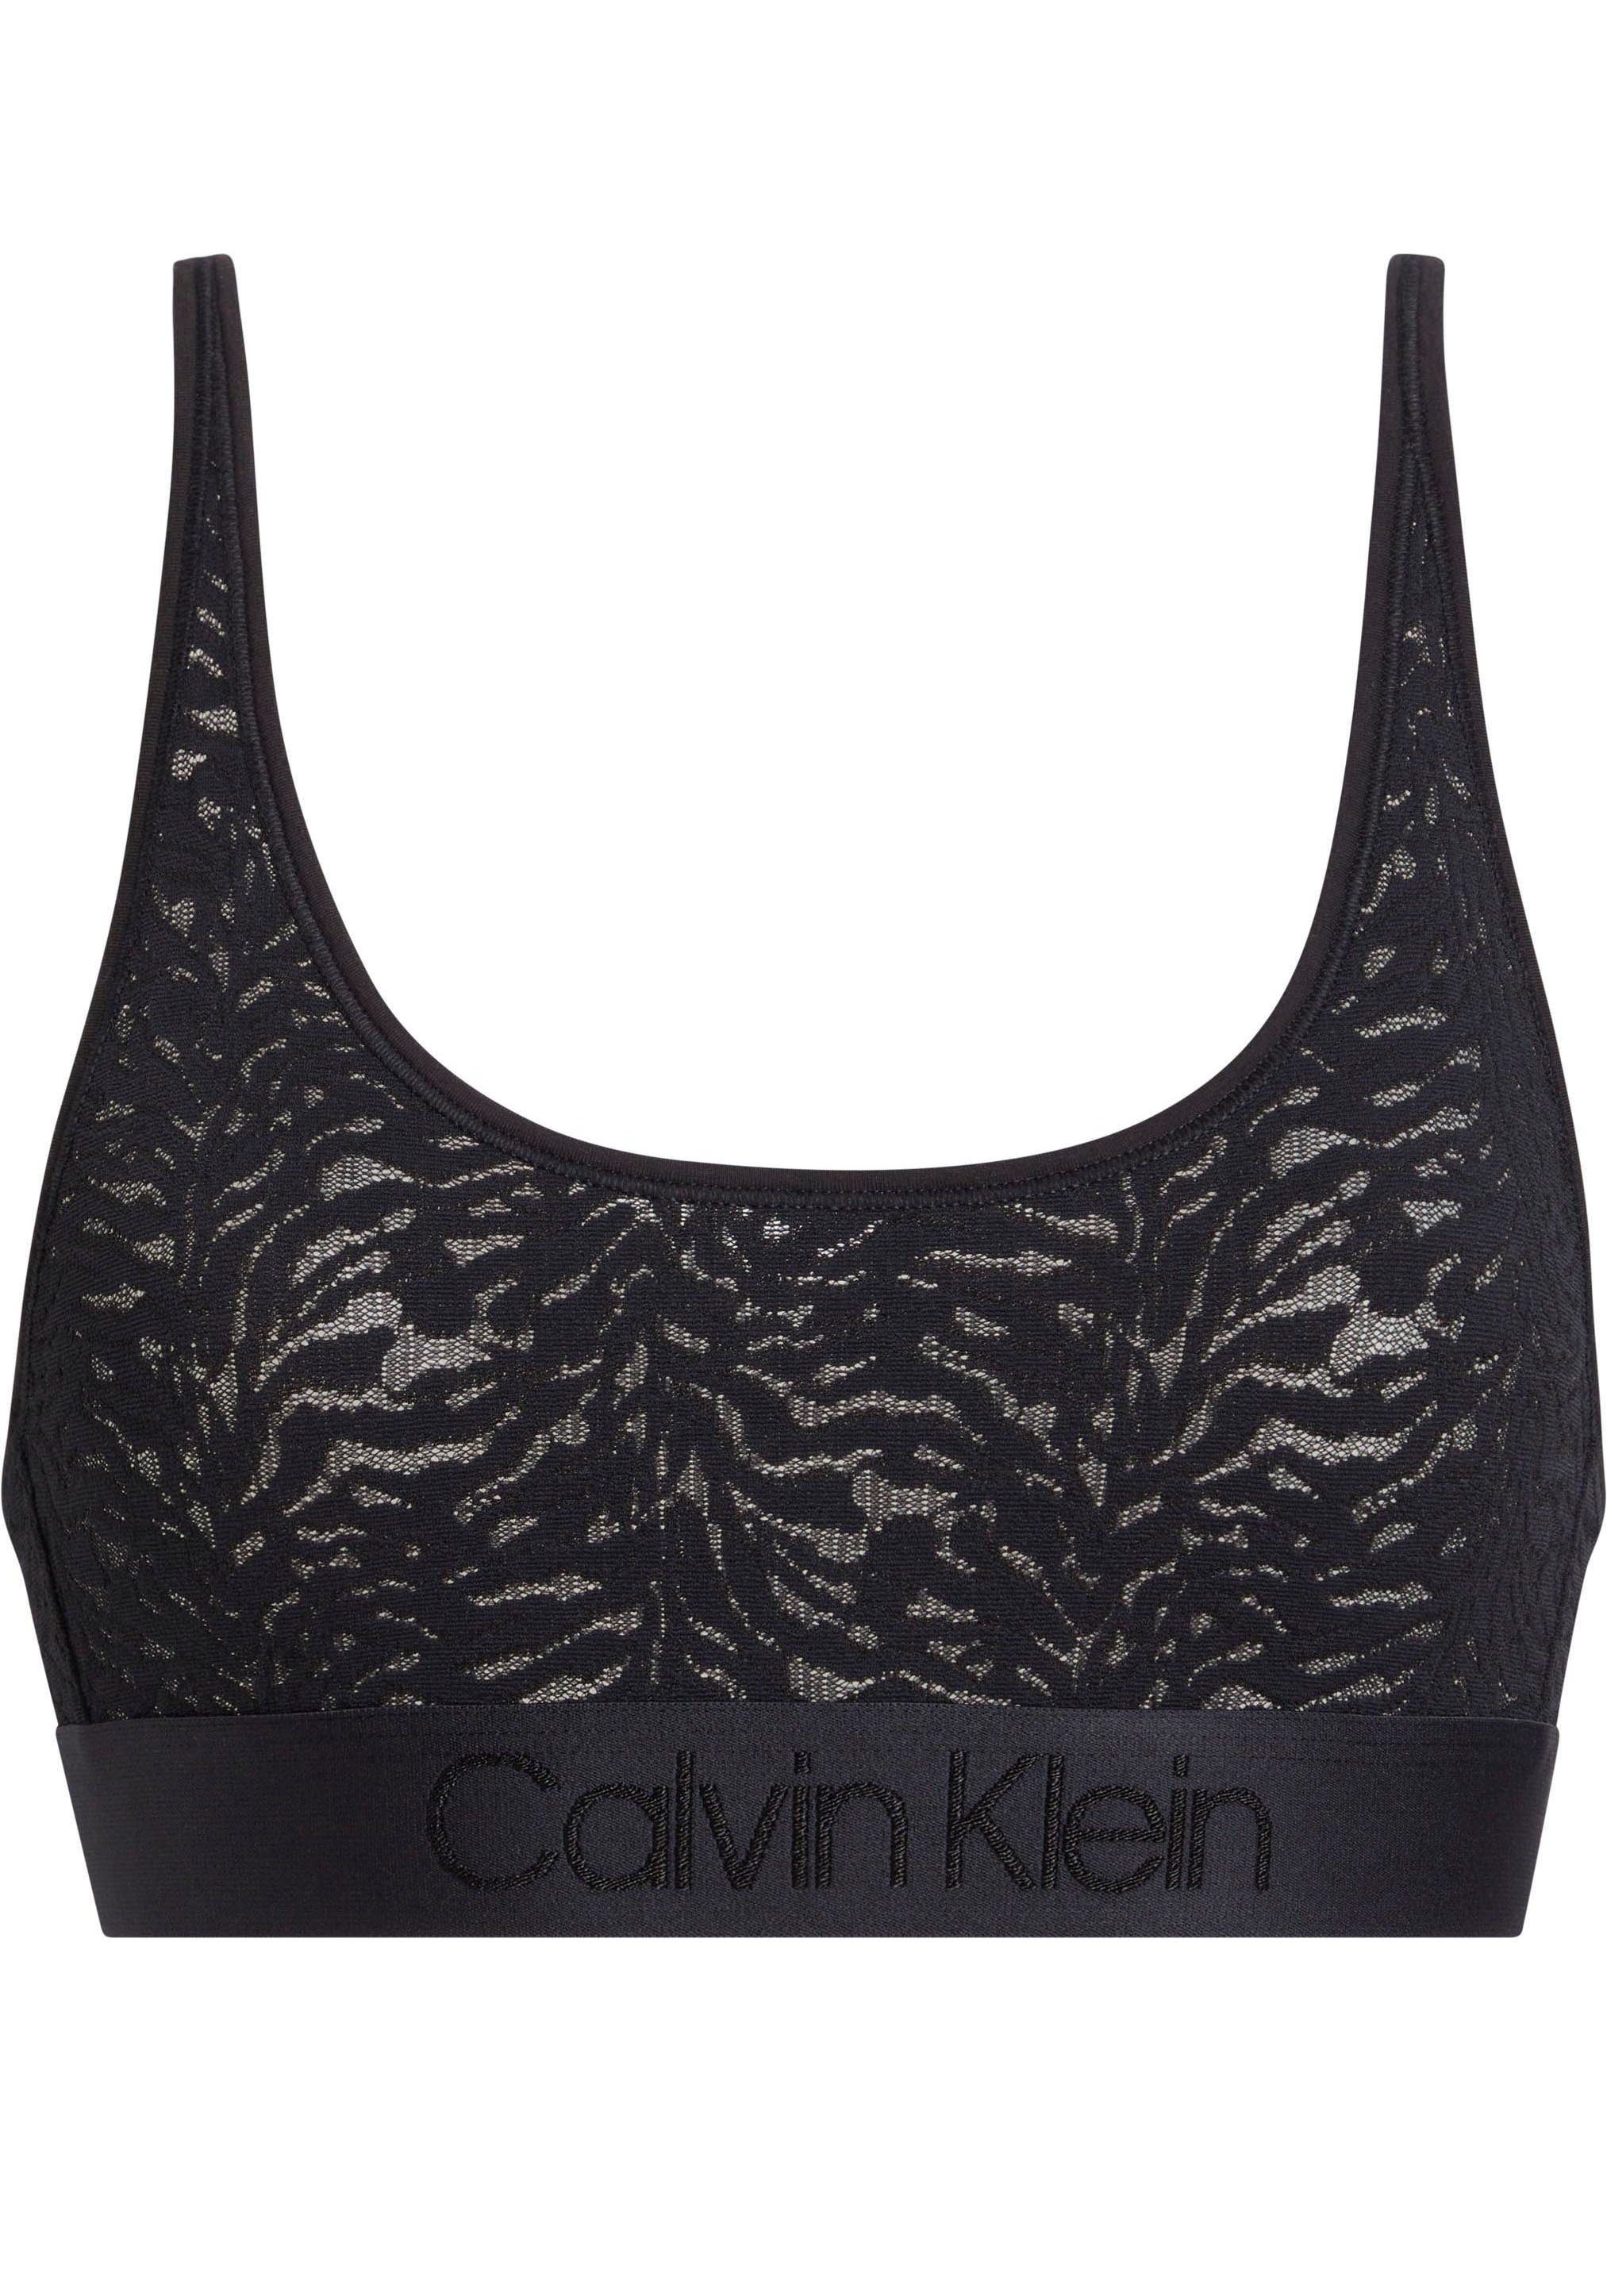 Calvin Klein Underwear BLACK UNLINED aus BRALETTE Bralette-BH Spitze